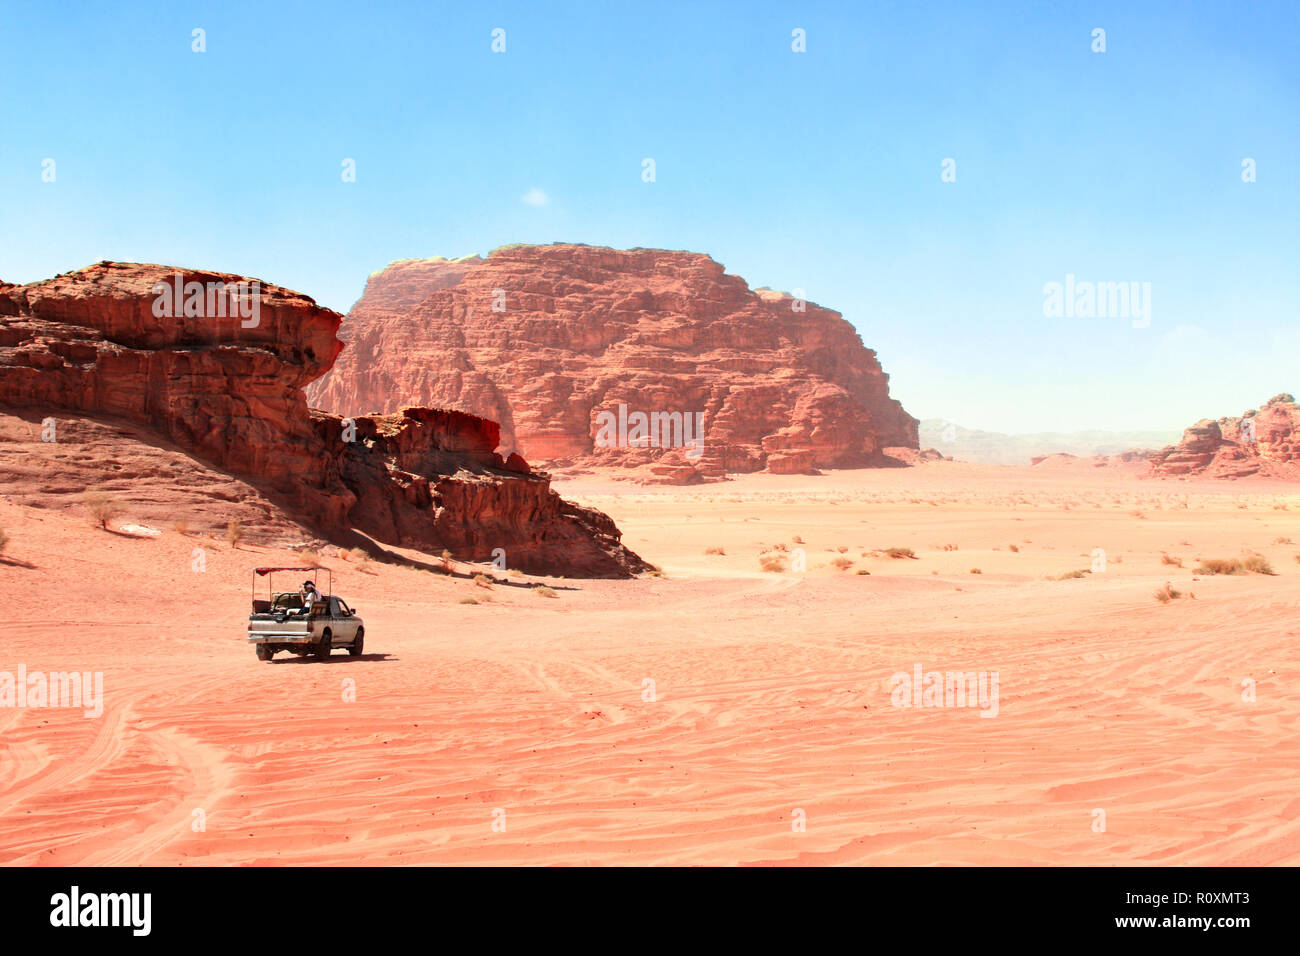 Safari en Jeep dans le désert de Wadi Rum, Jordanie. Les touristes dans la voiture en dehors de la route sur le sable entre les rochers Banque D'Images